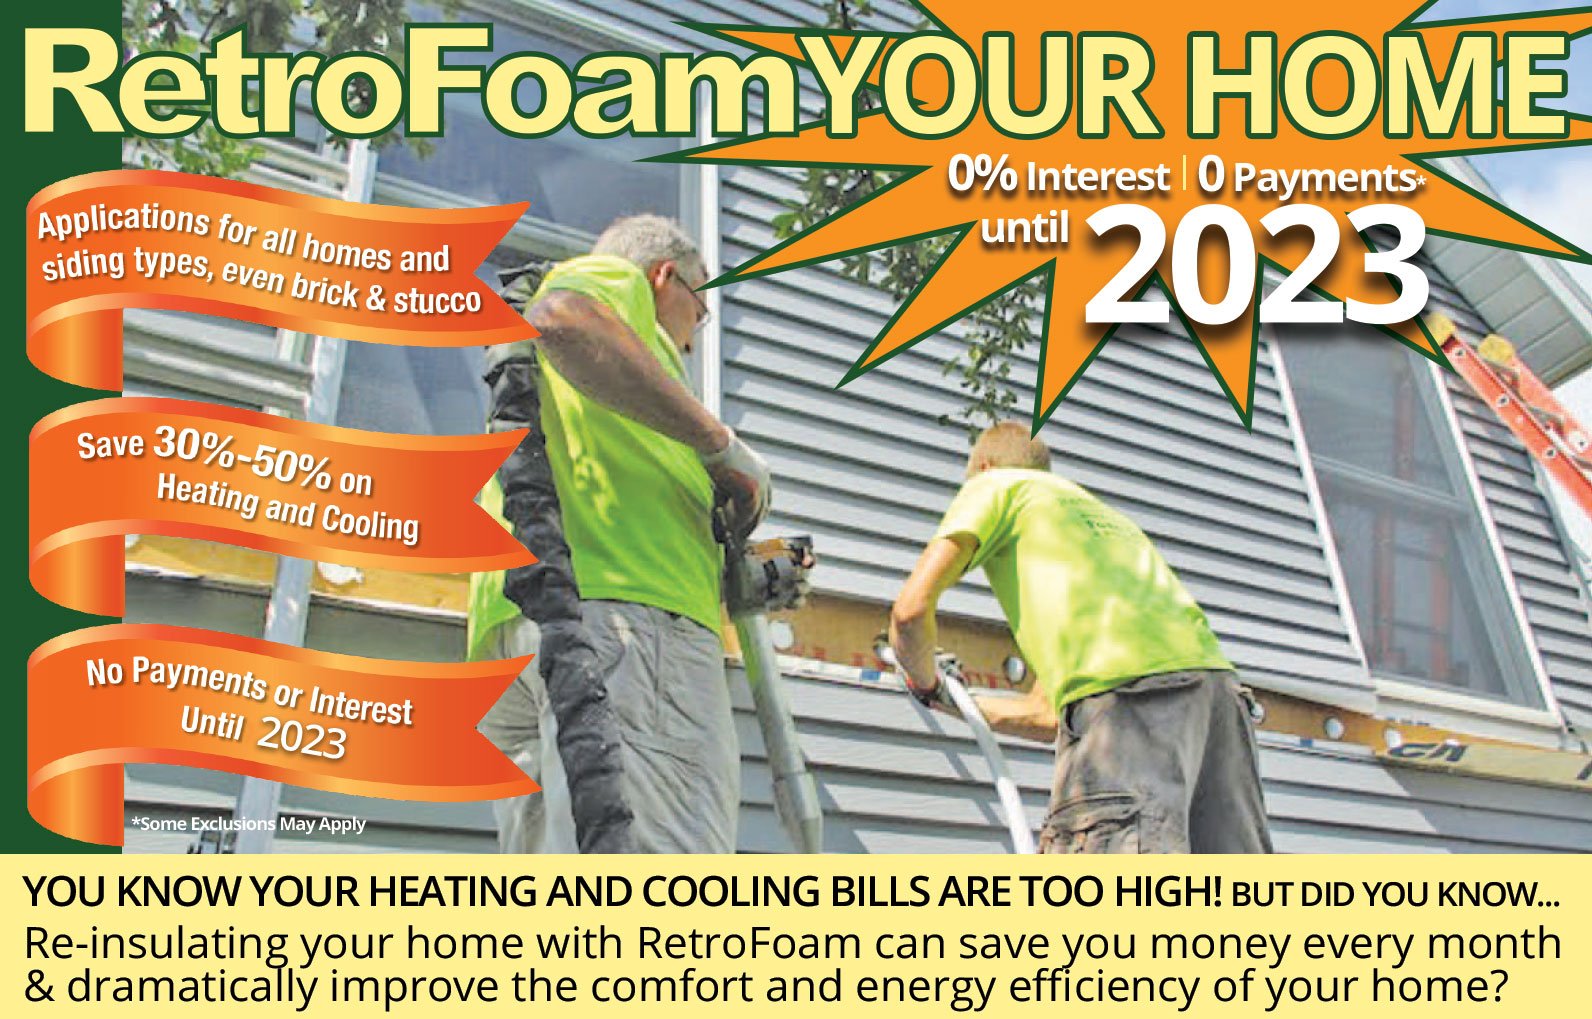 RetroFoam Your Home with Zero Interest